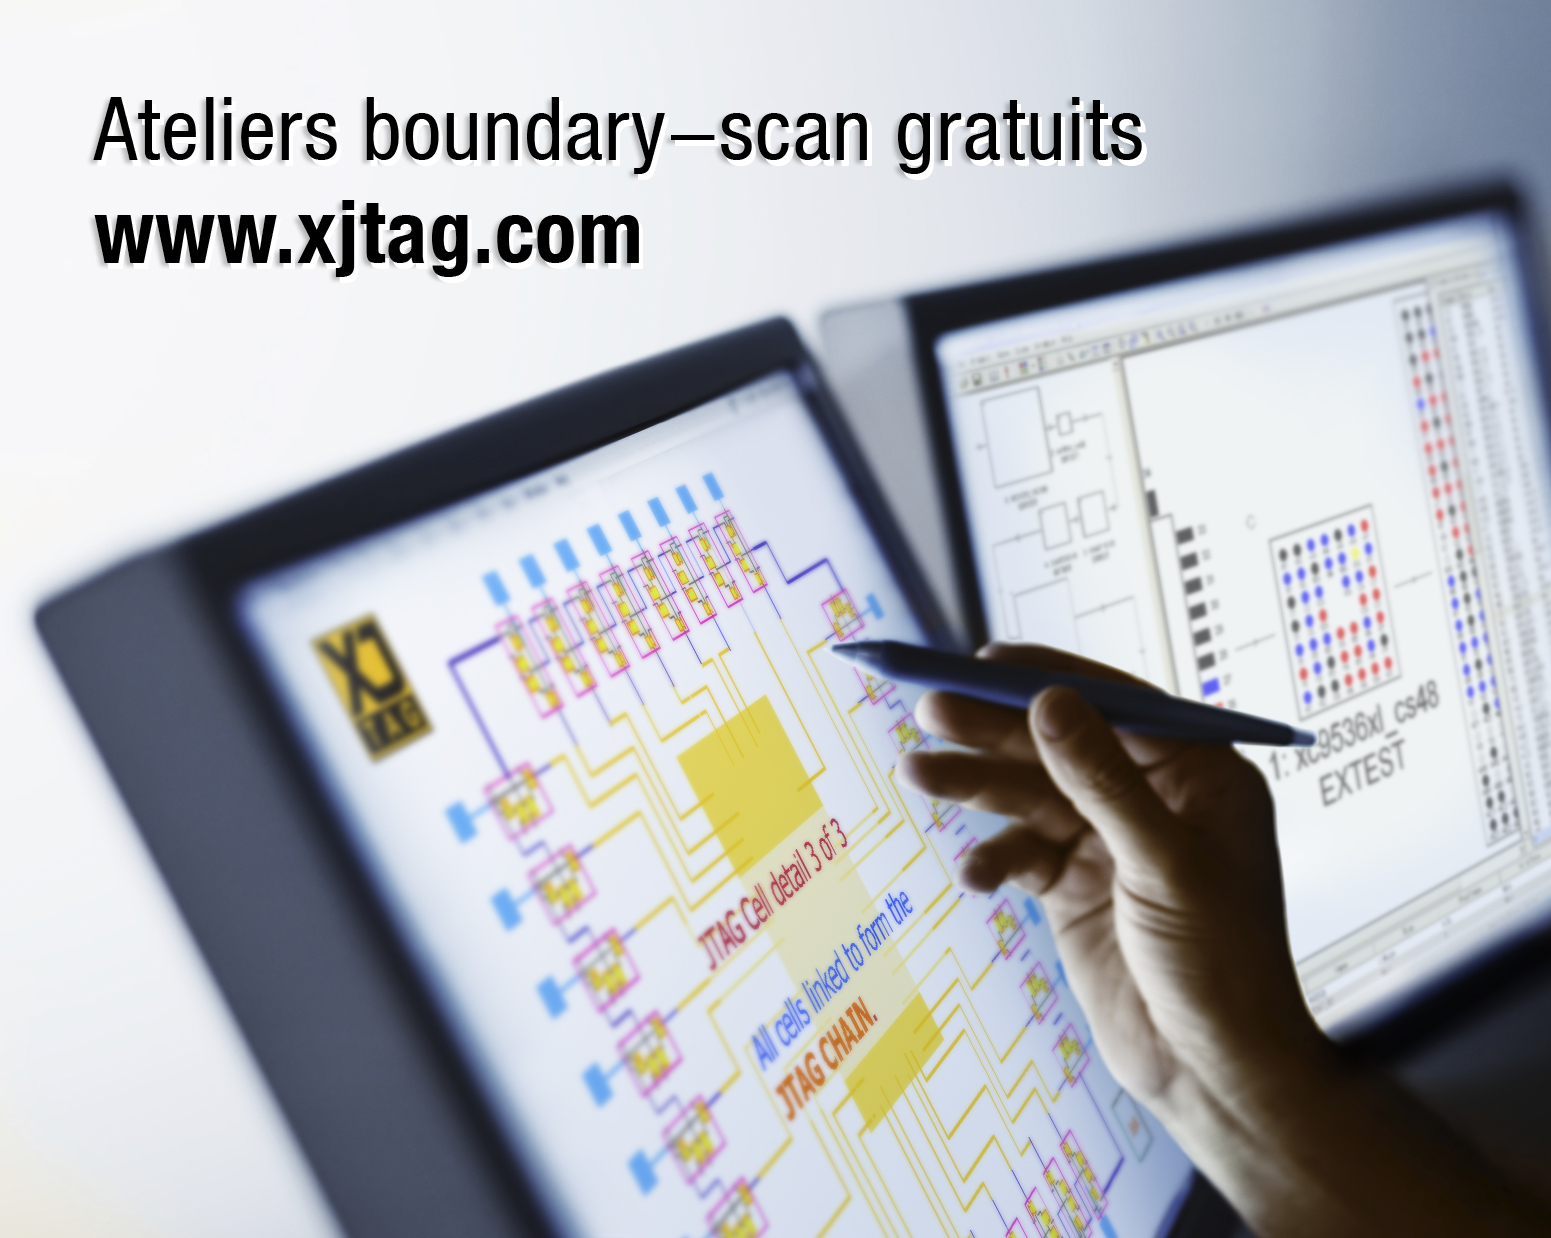 Ateliers boundary-scan JTAG gratuits chez XJTAG